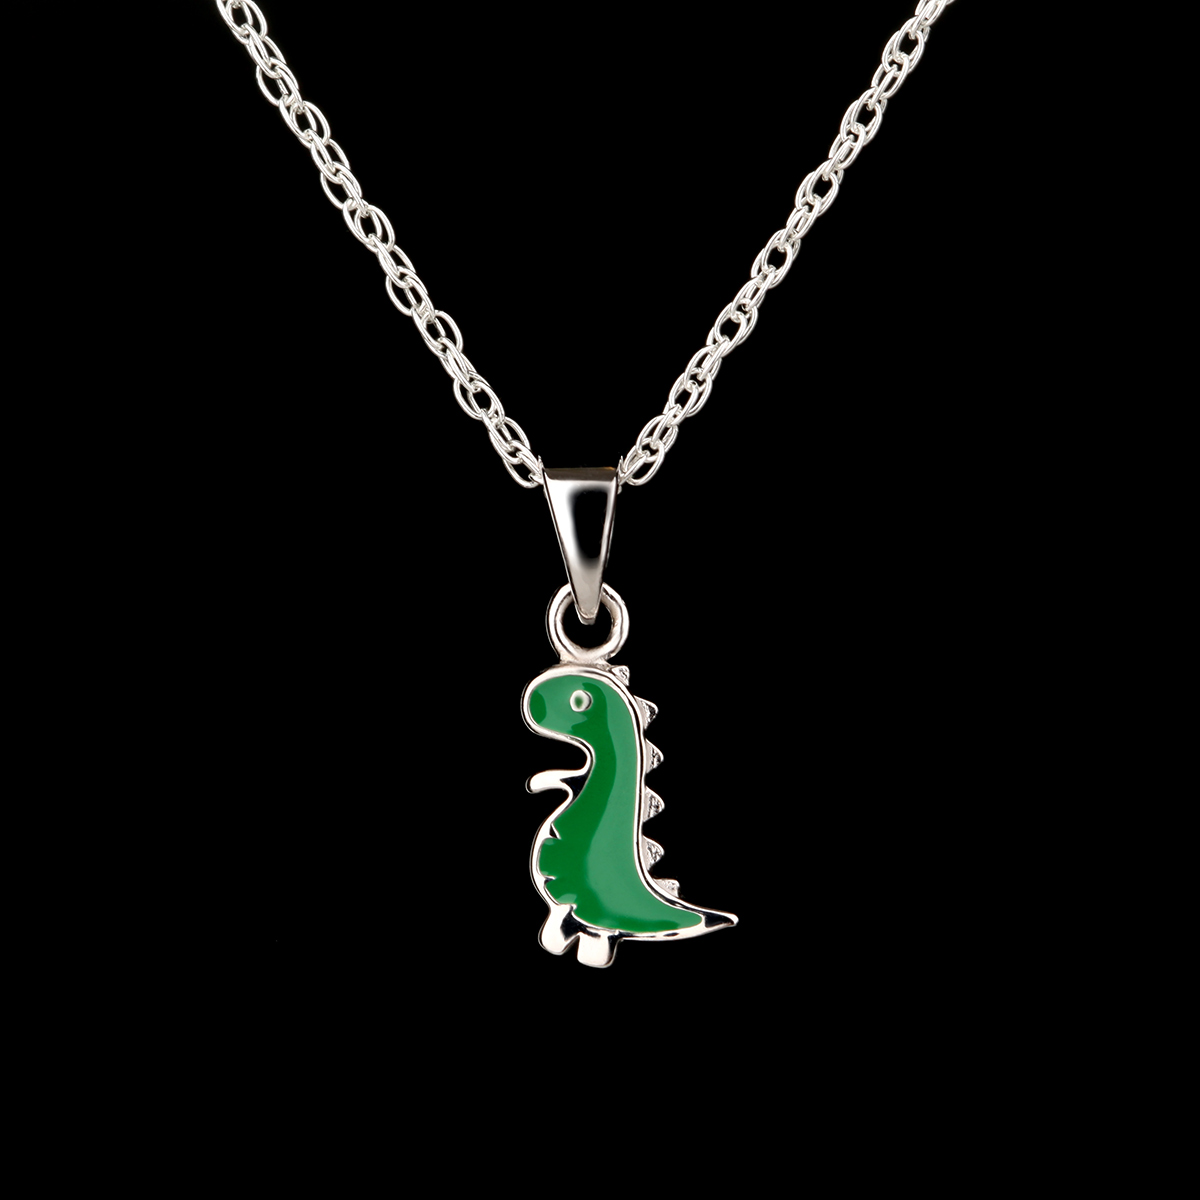 Little Nessie - süße Loch Ness Monster Kette für Kinder - Sterling Silber & Emaille